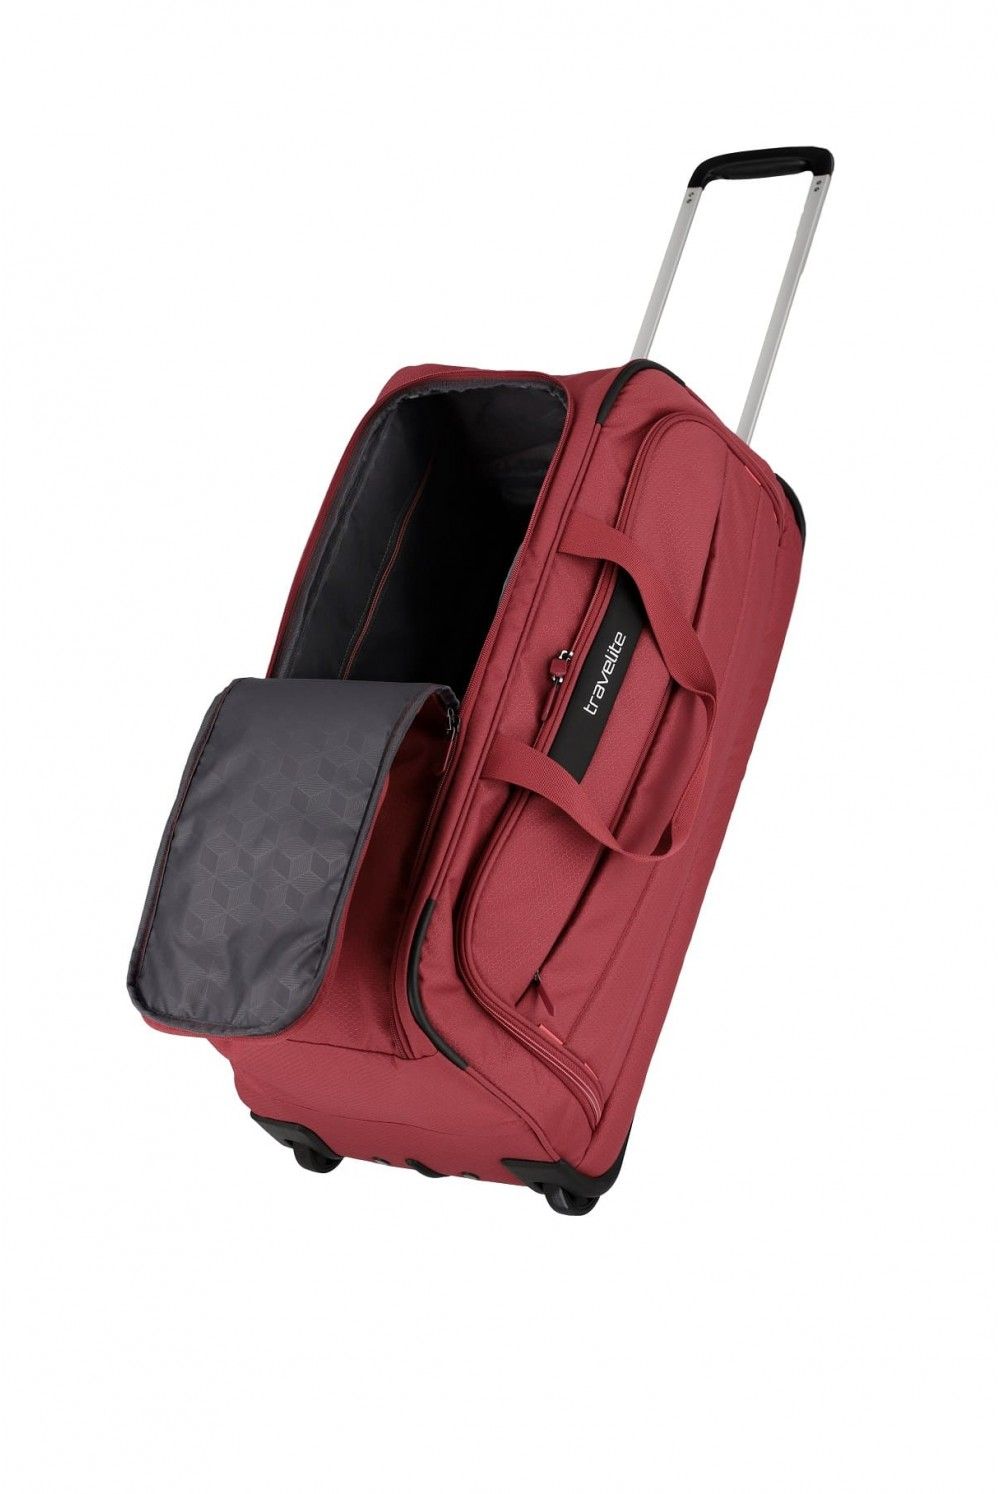 Travelite Skaii travel bag with wheels 63 liters